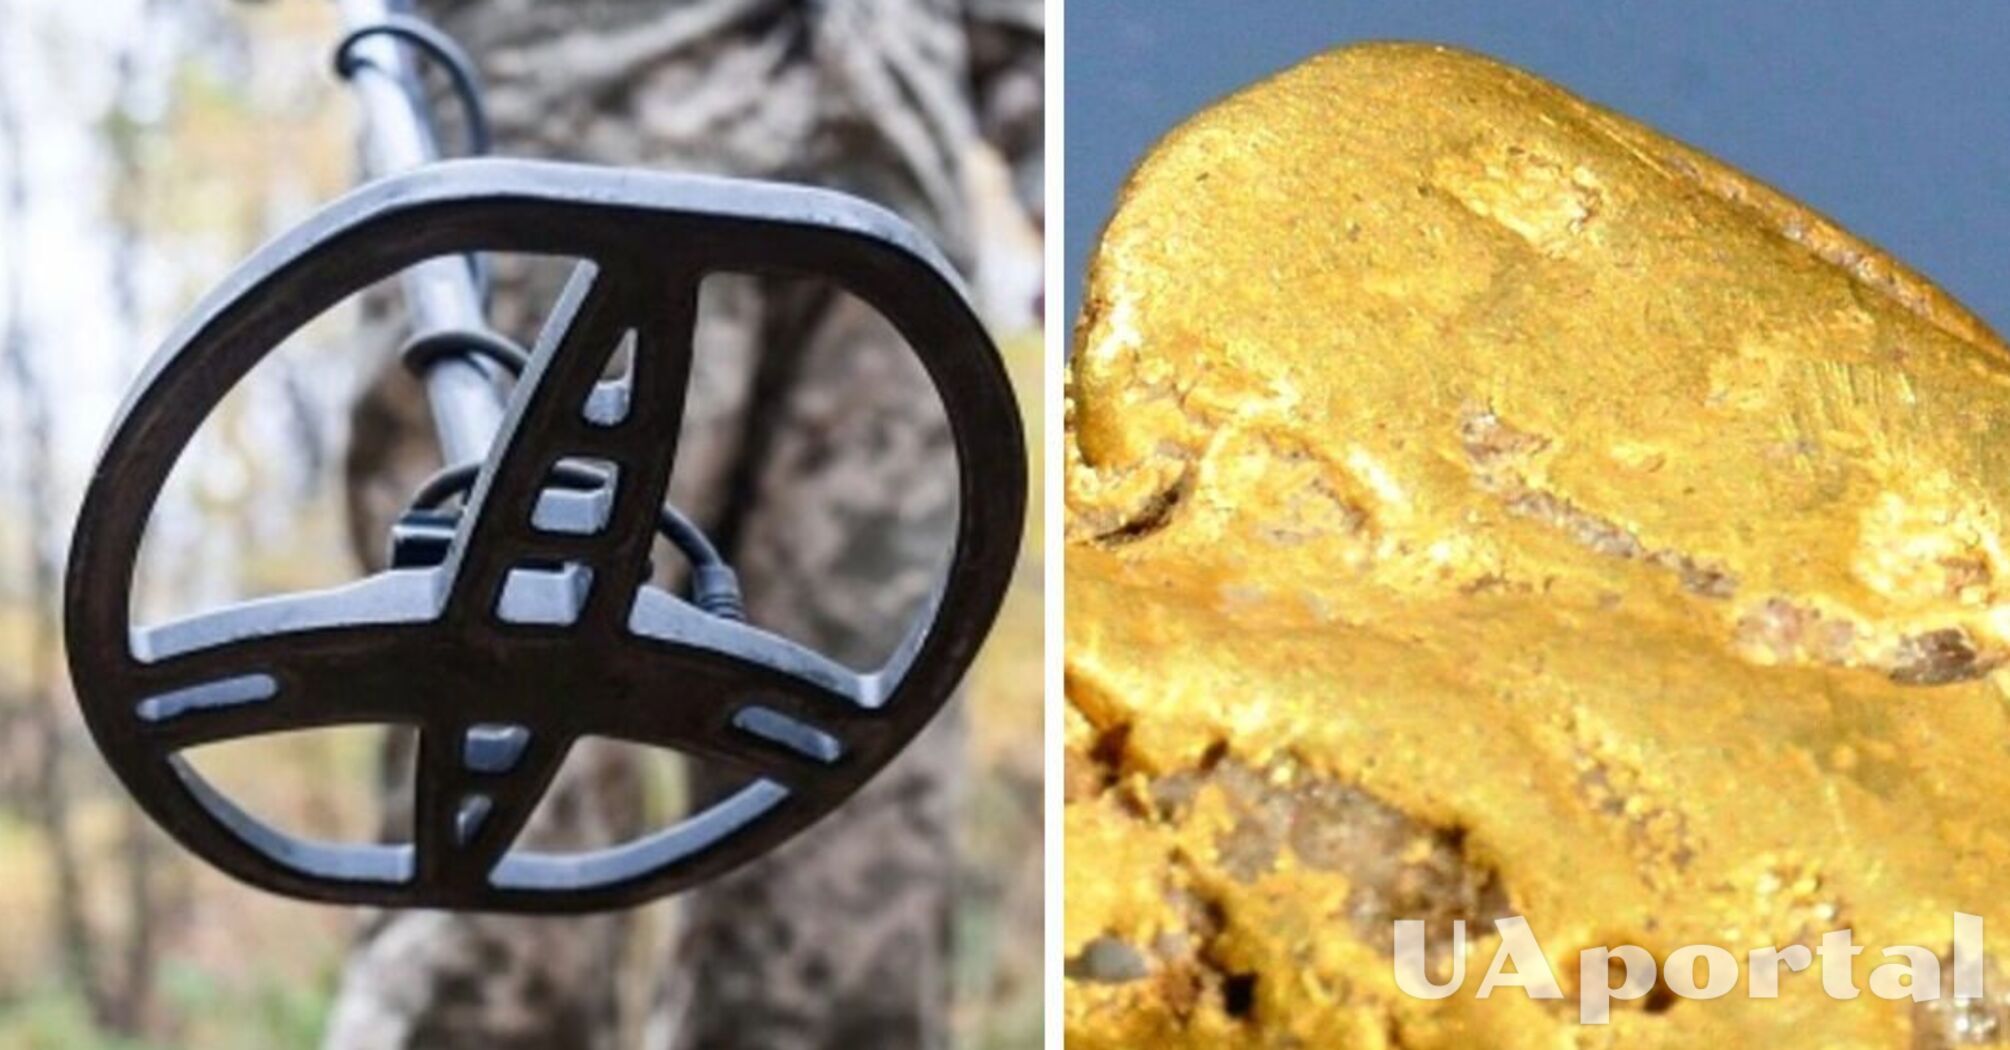 Пенсіонер з несправним металошукачем знайшов найбільший самородок золота в Англії (фото)